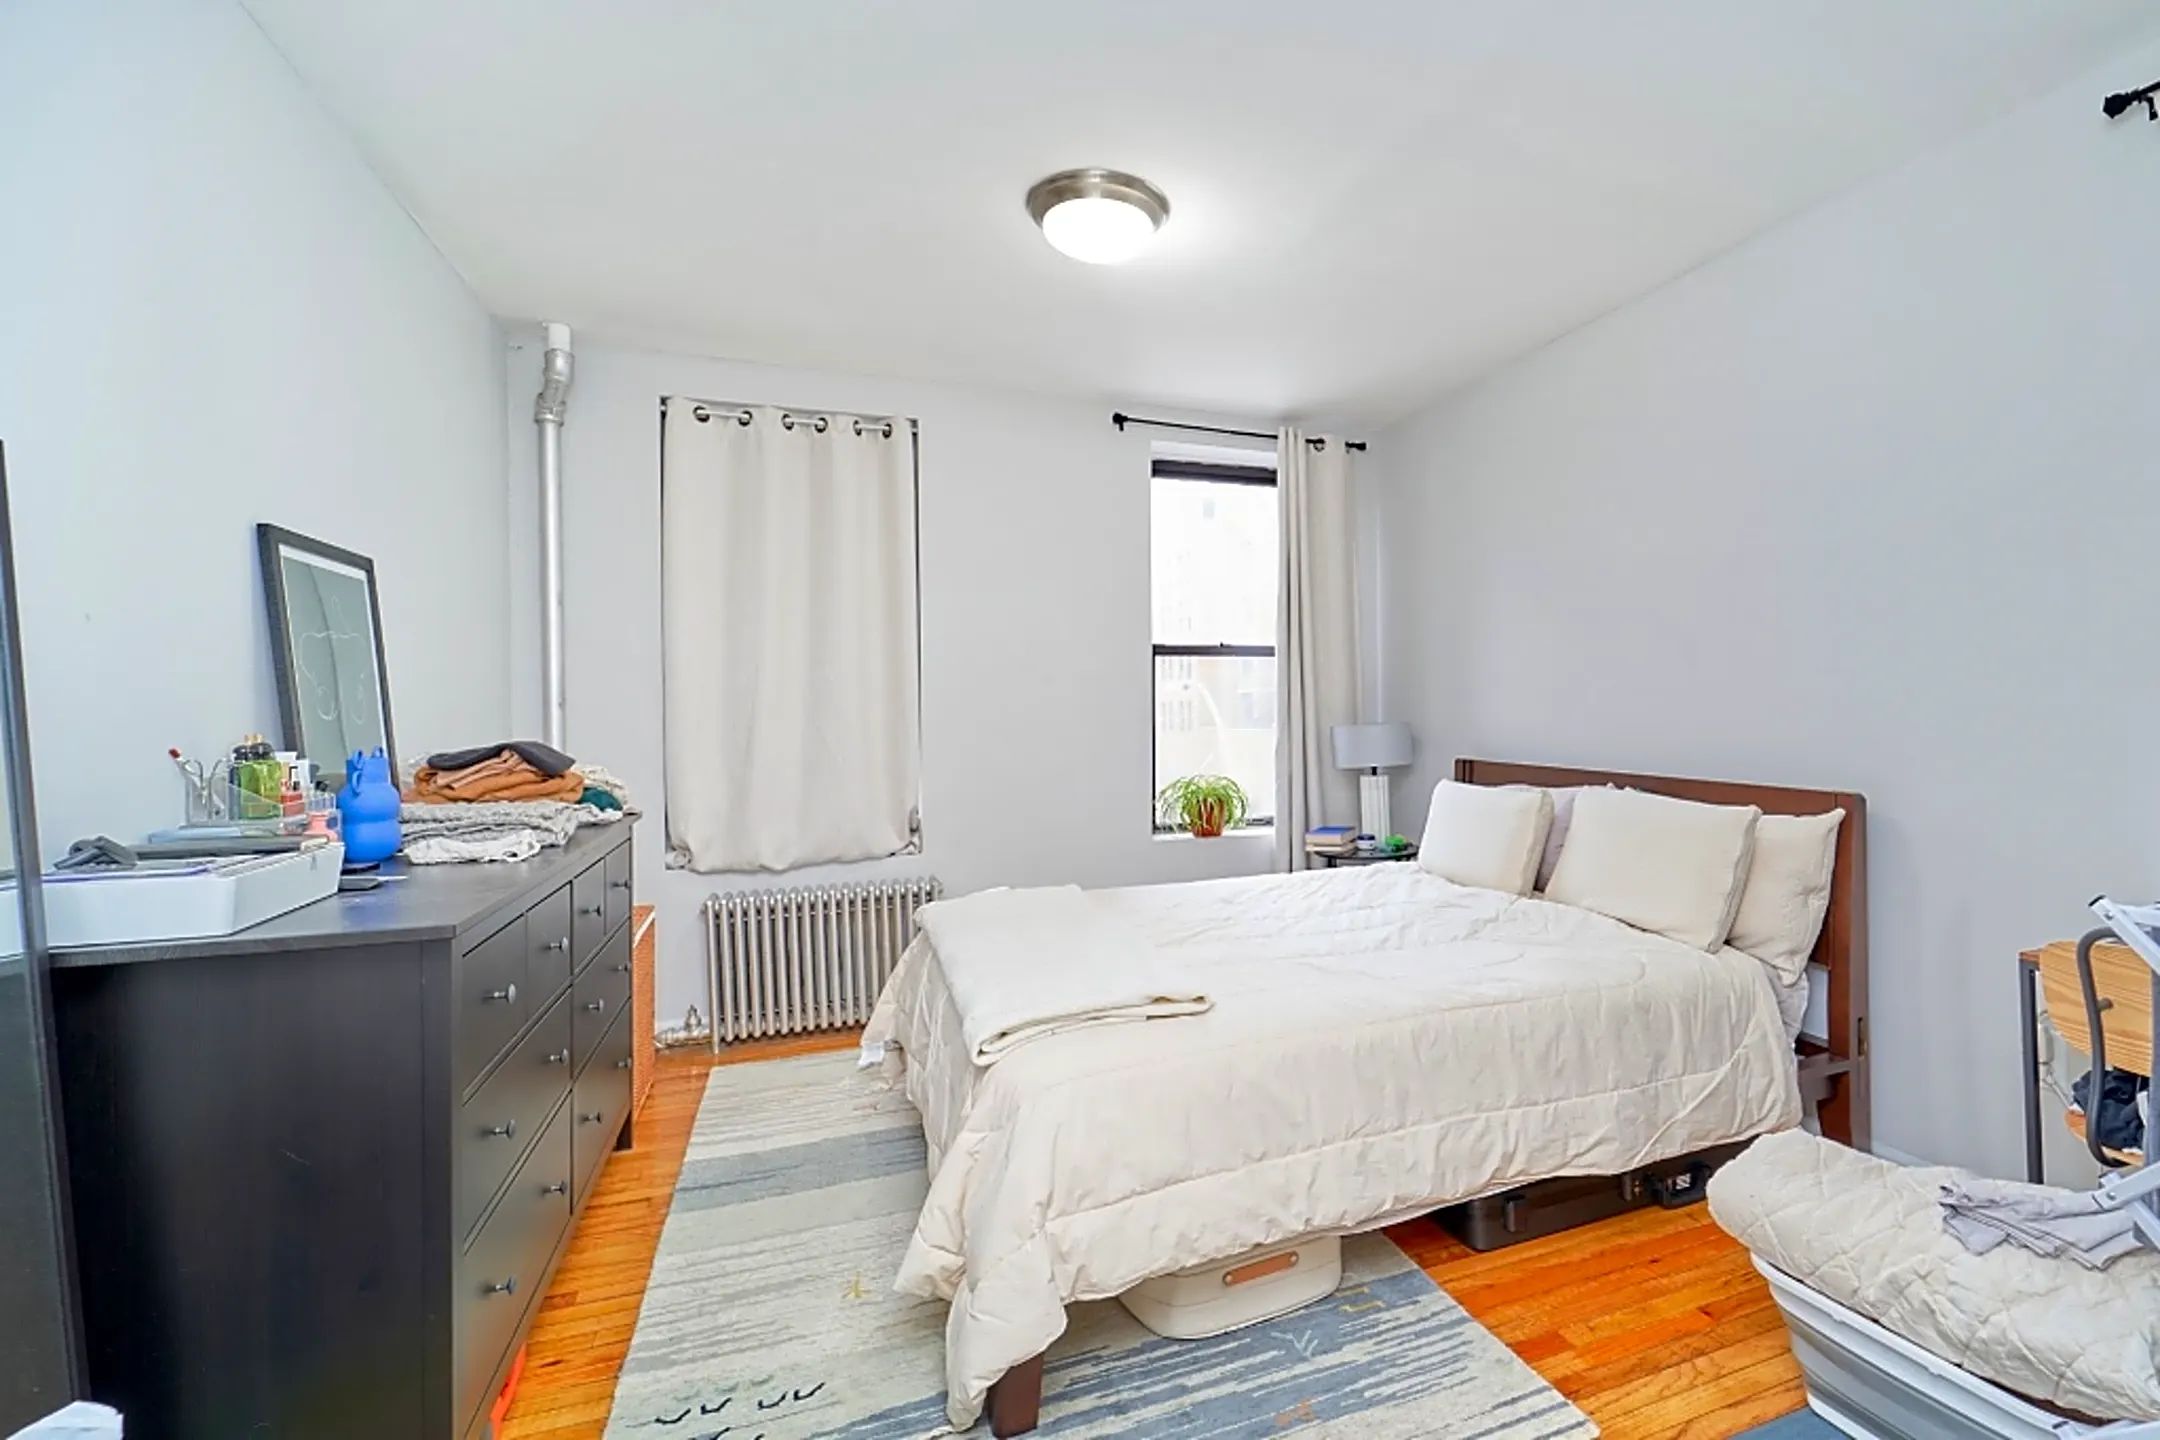 Bedroom - 1741 1st Ave. - New York, NY